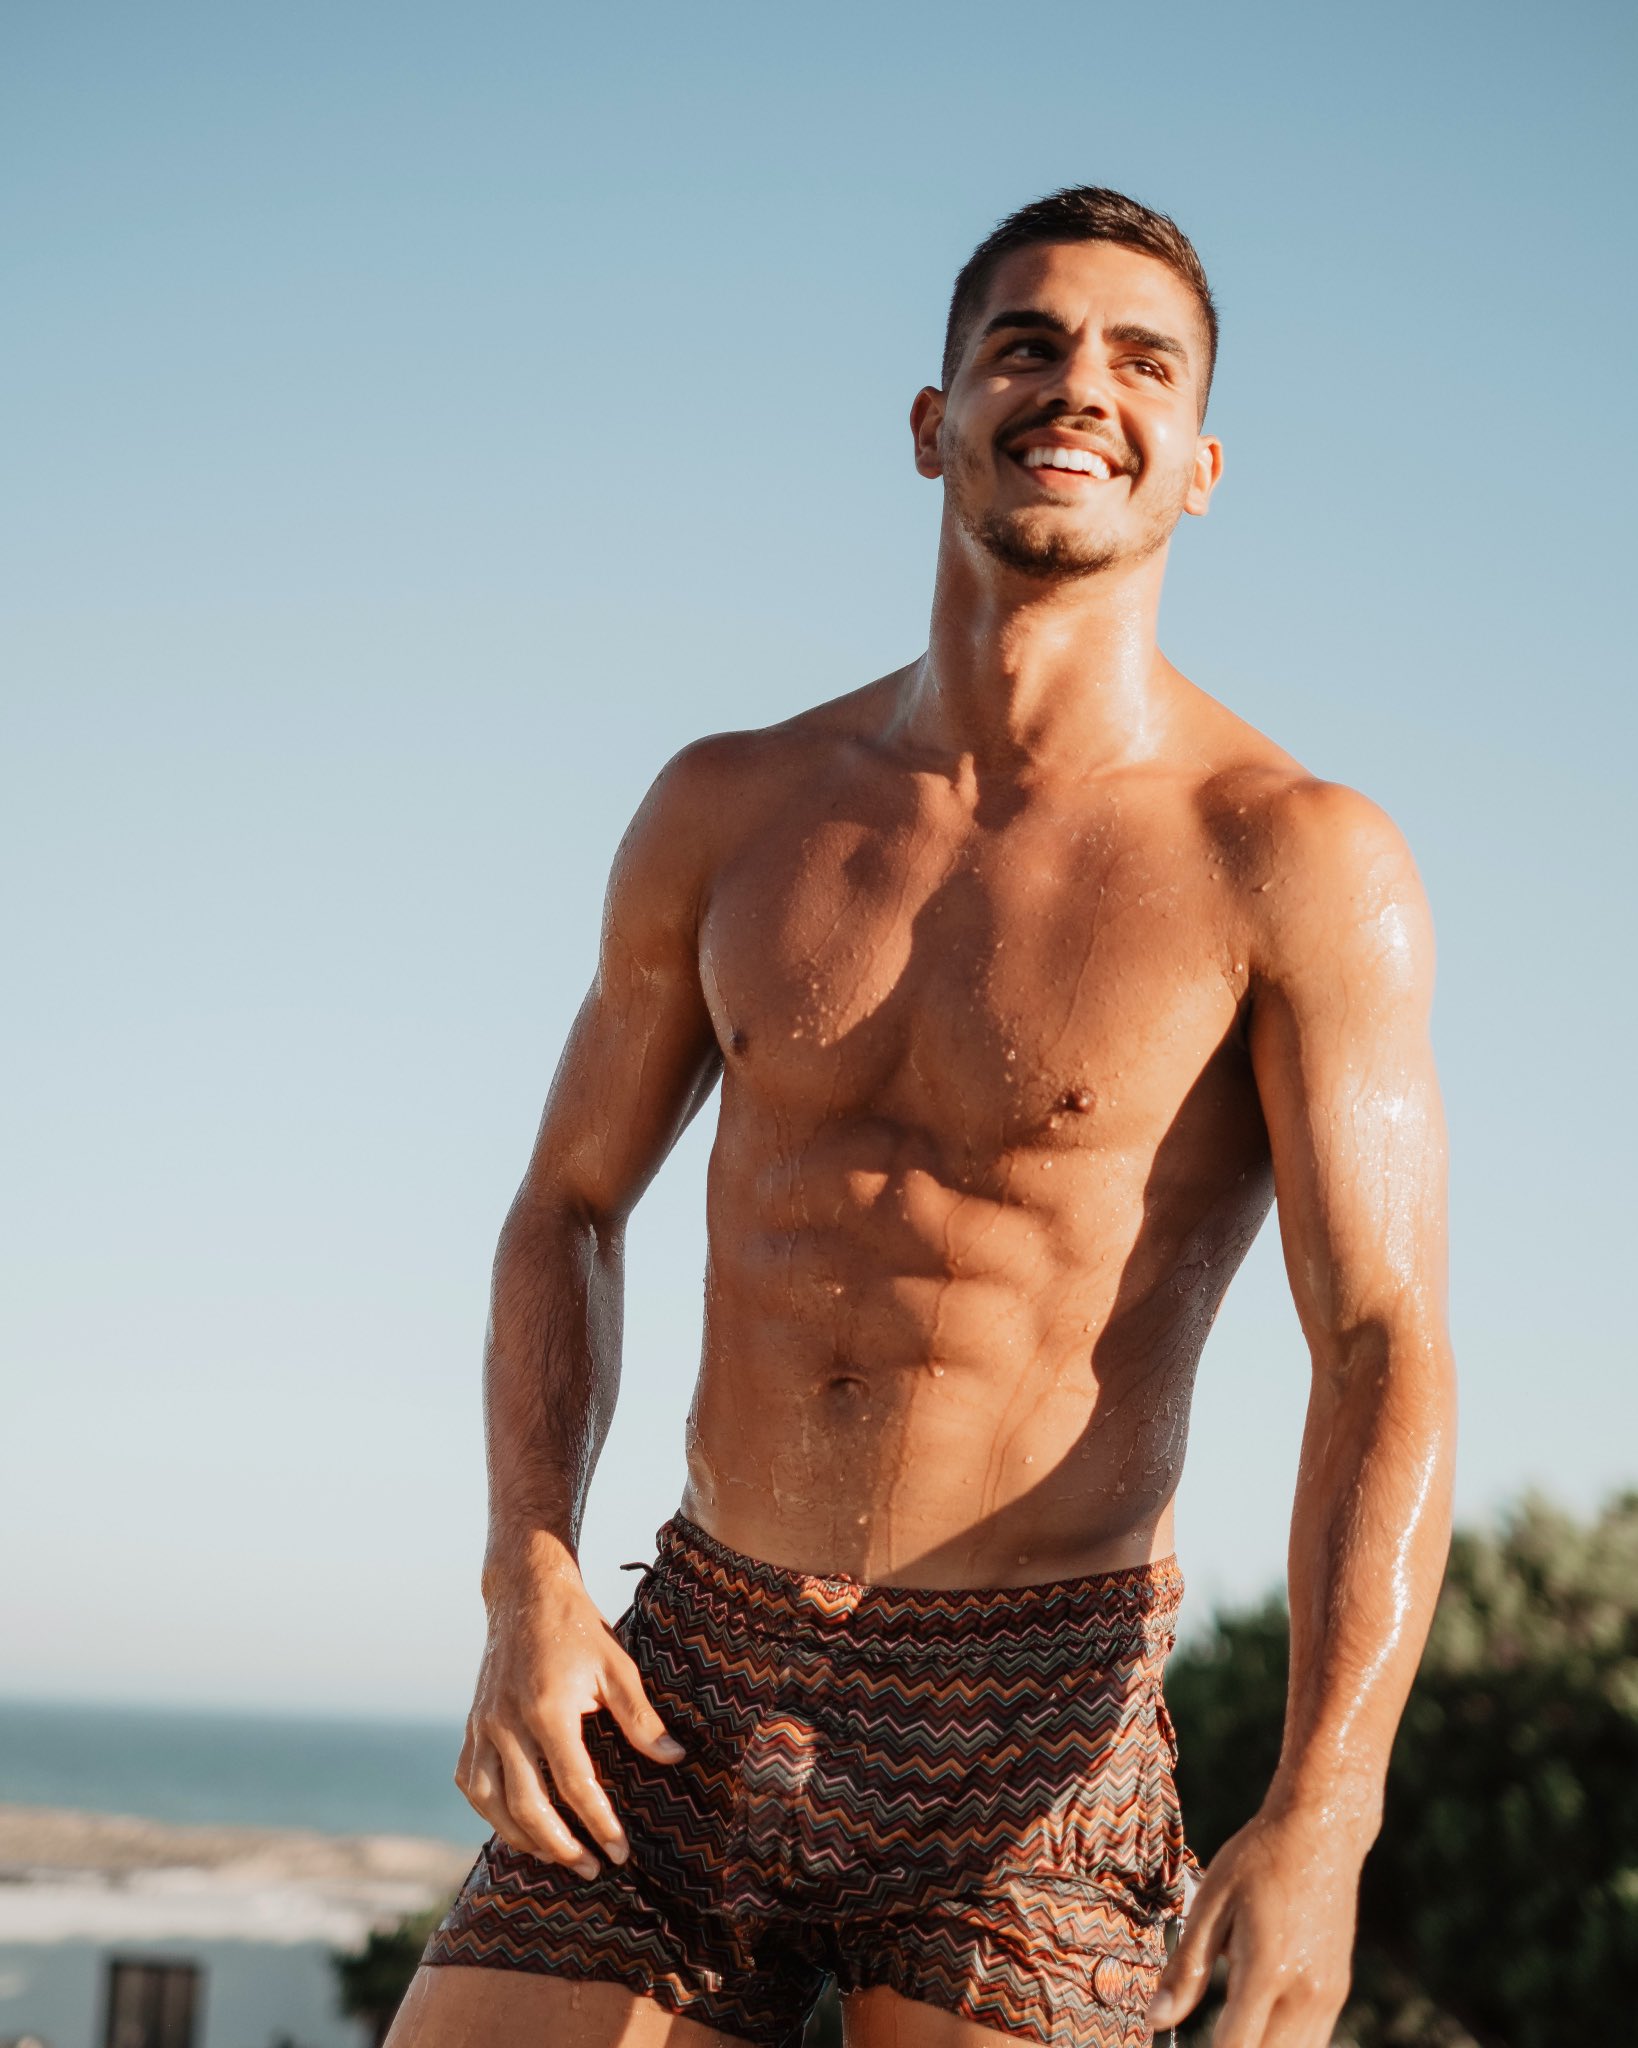 Der Christian
 Skorpion ohne shirt, und mit muskuläre Körper am Strand
